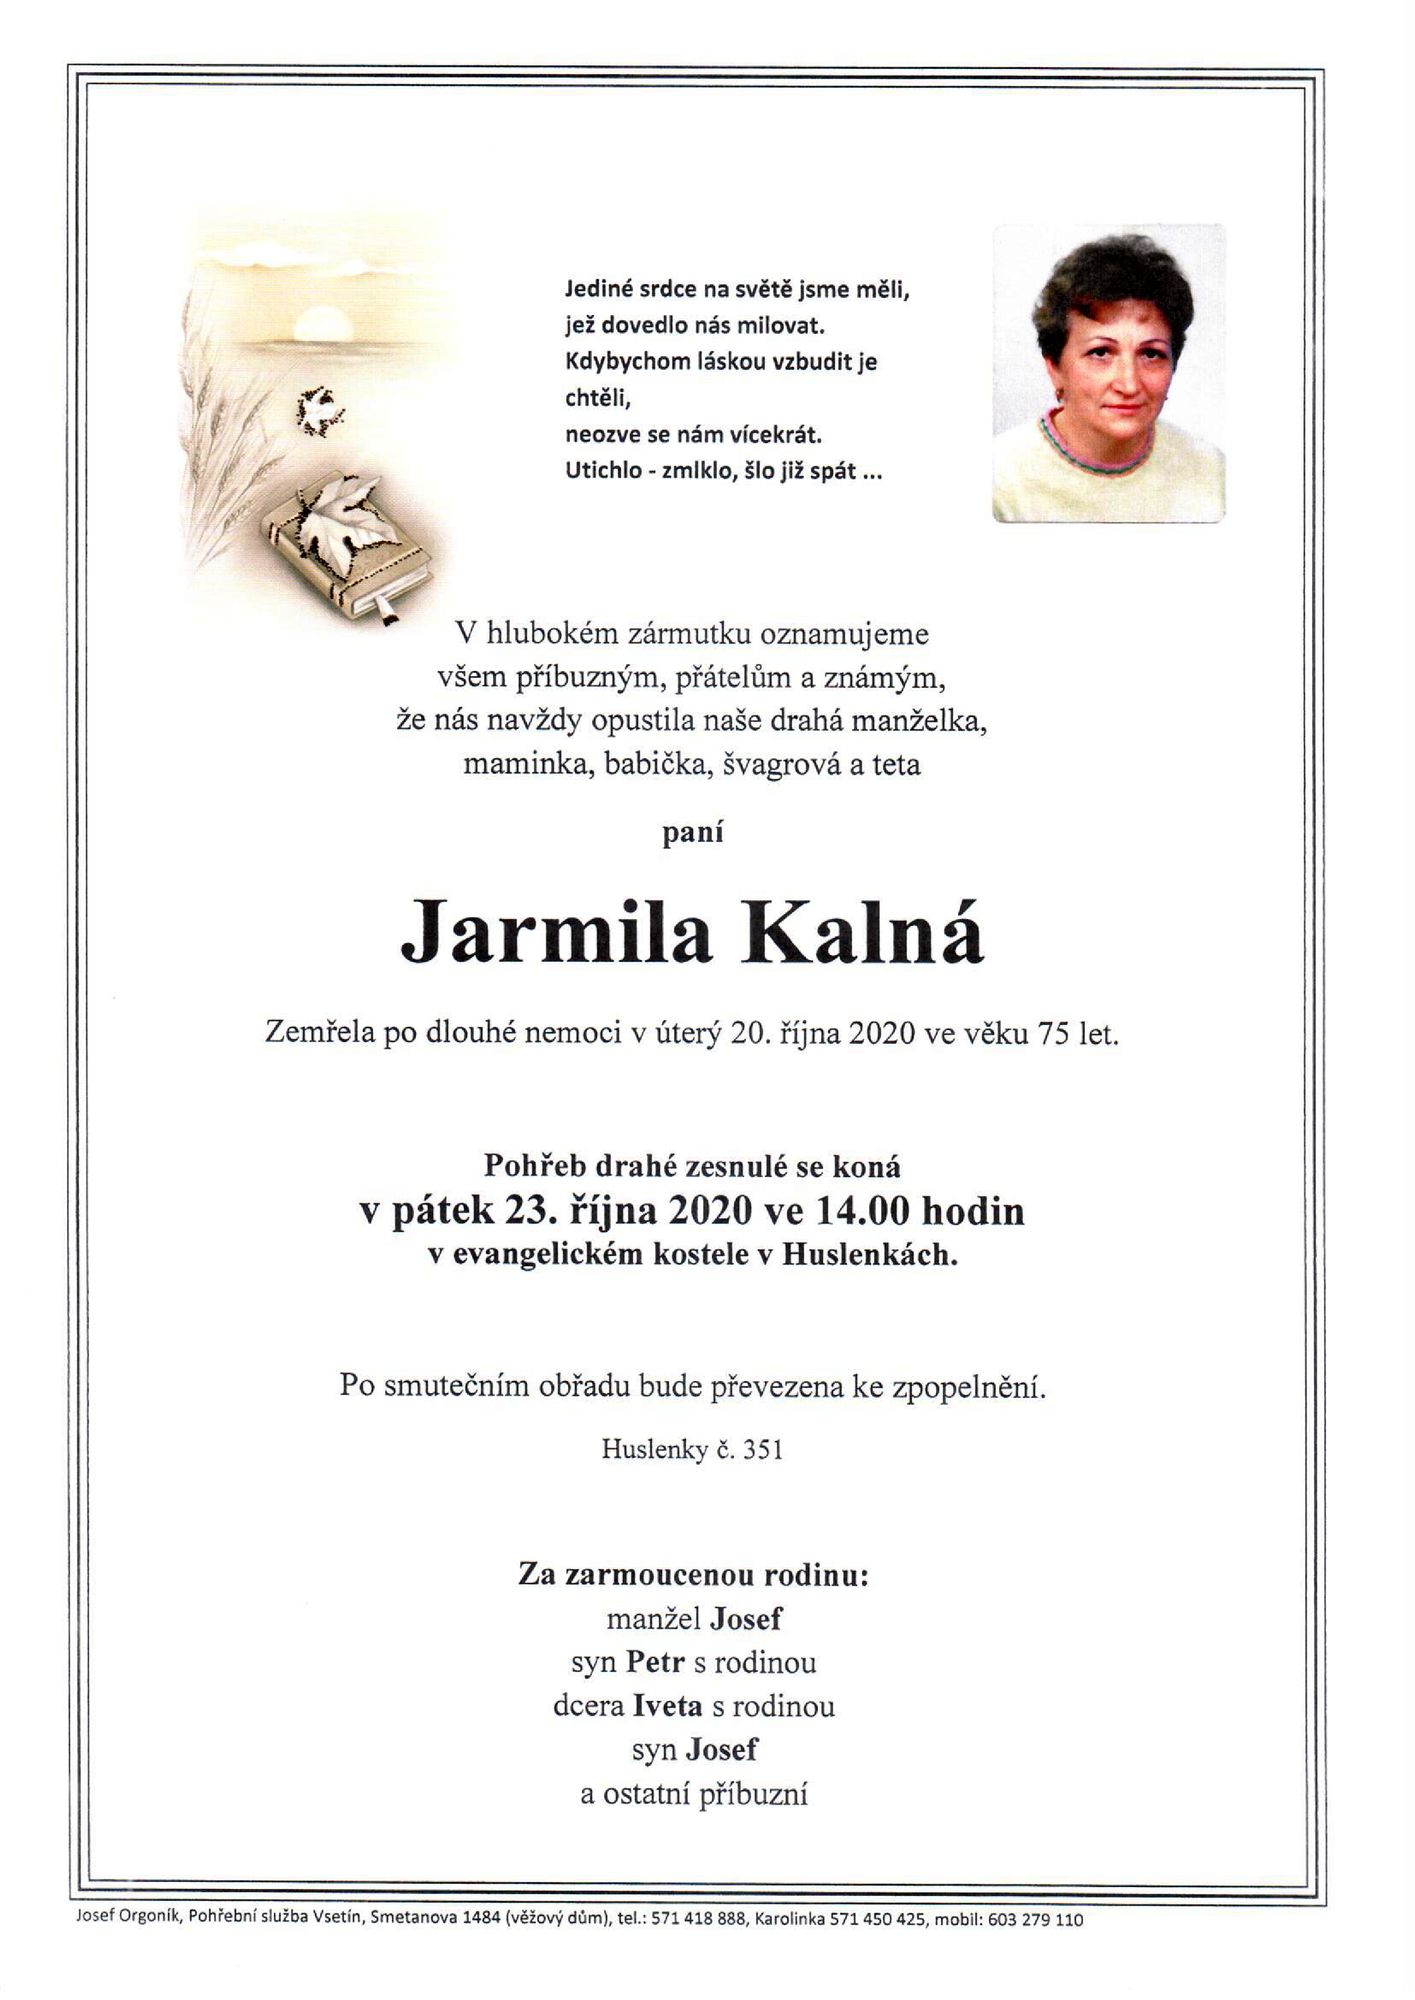 Jarmila Kalná